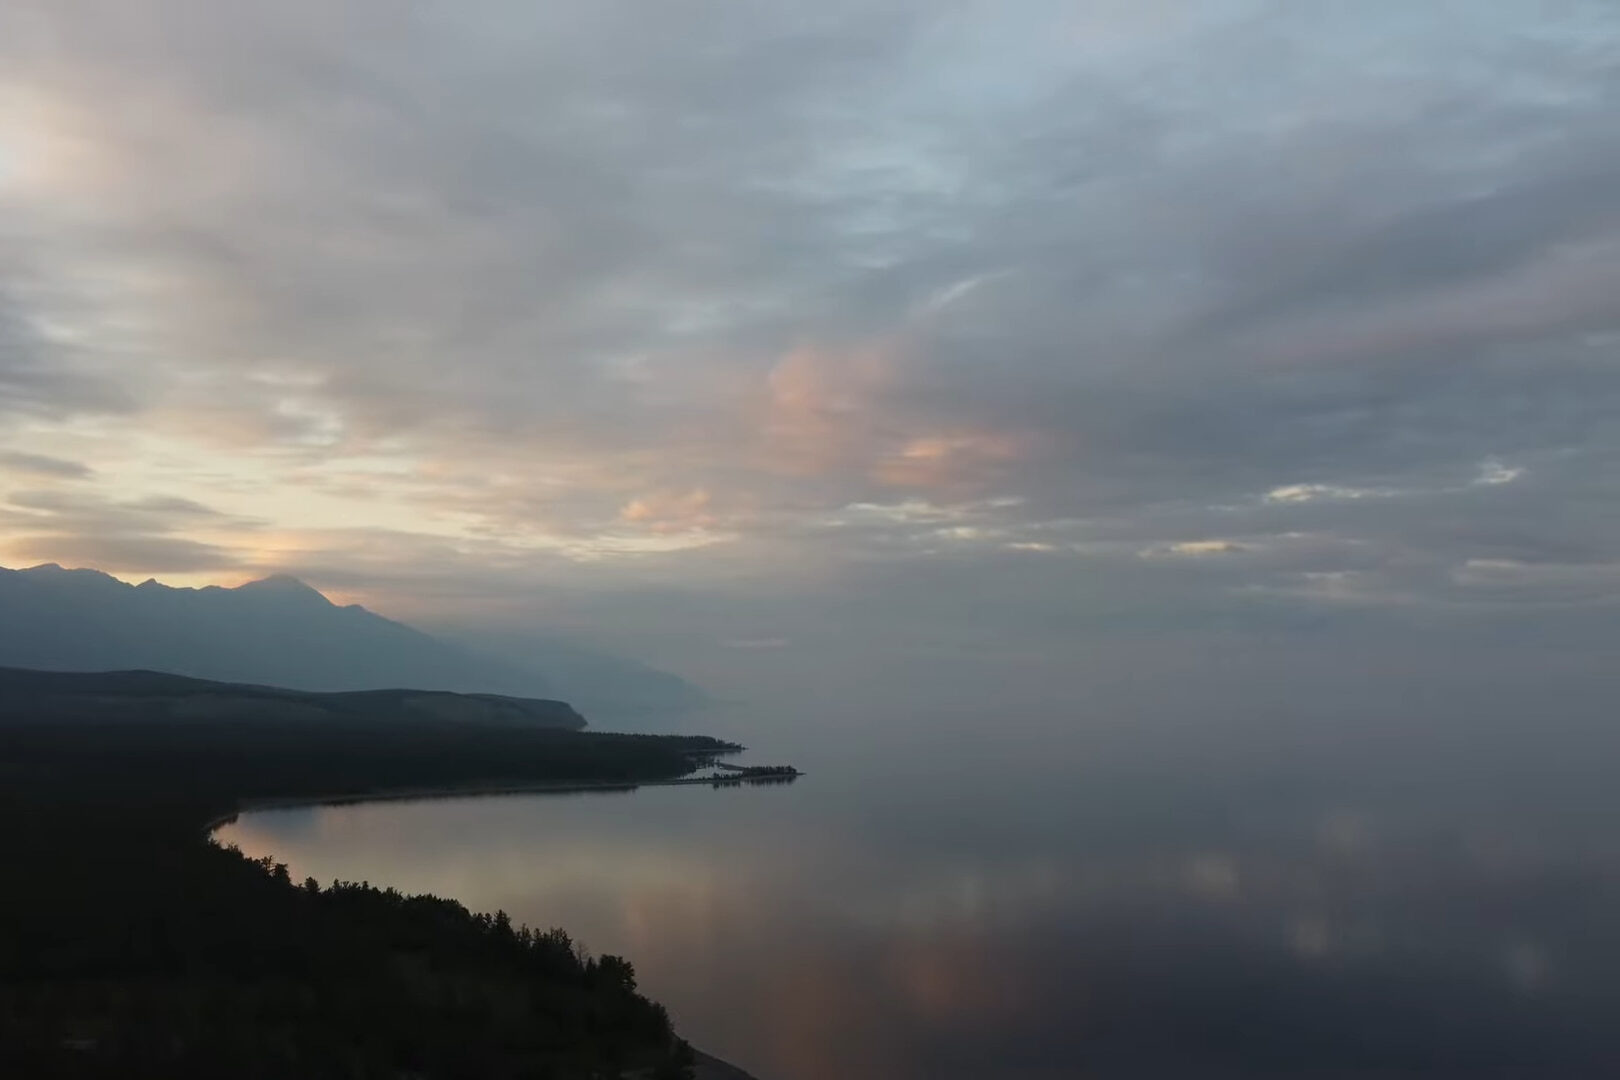  Lake Baikal 